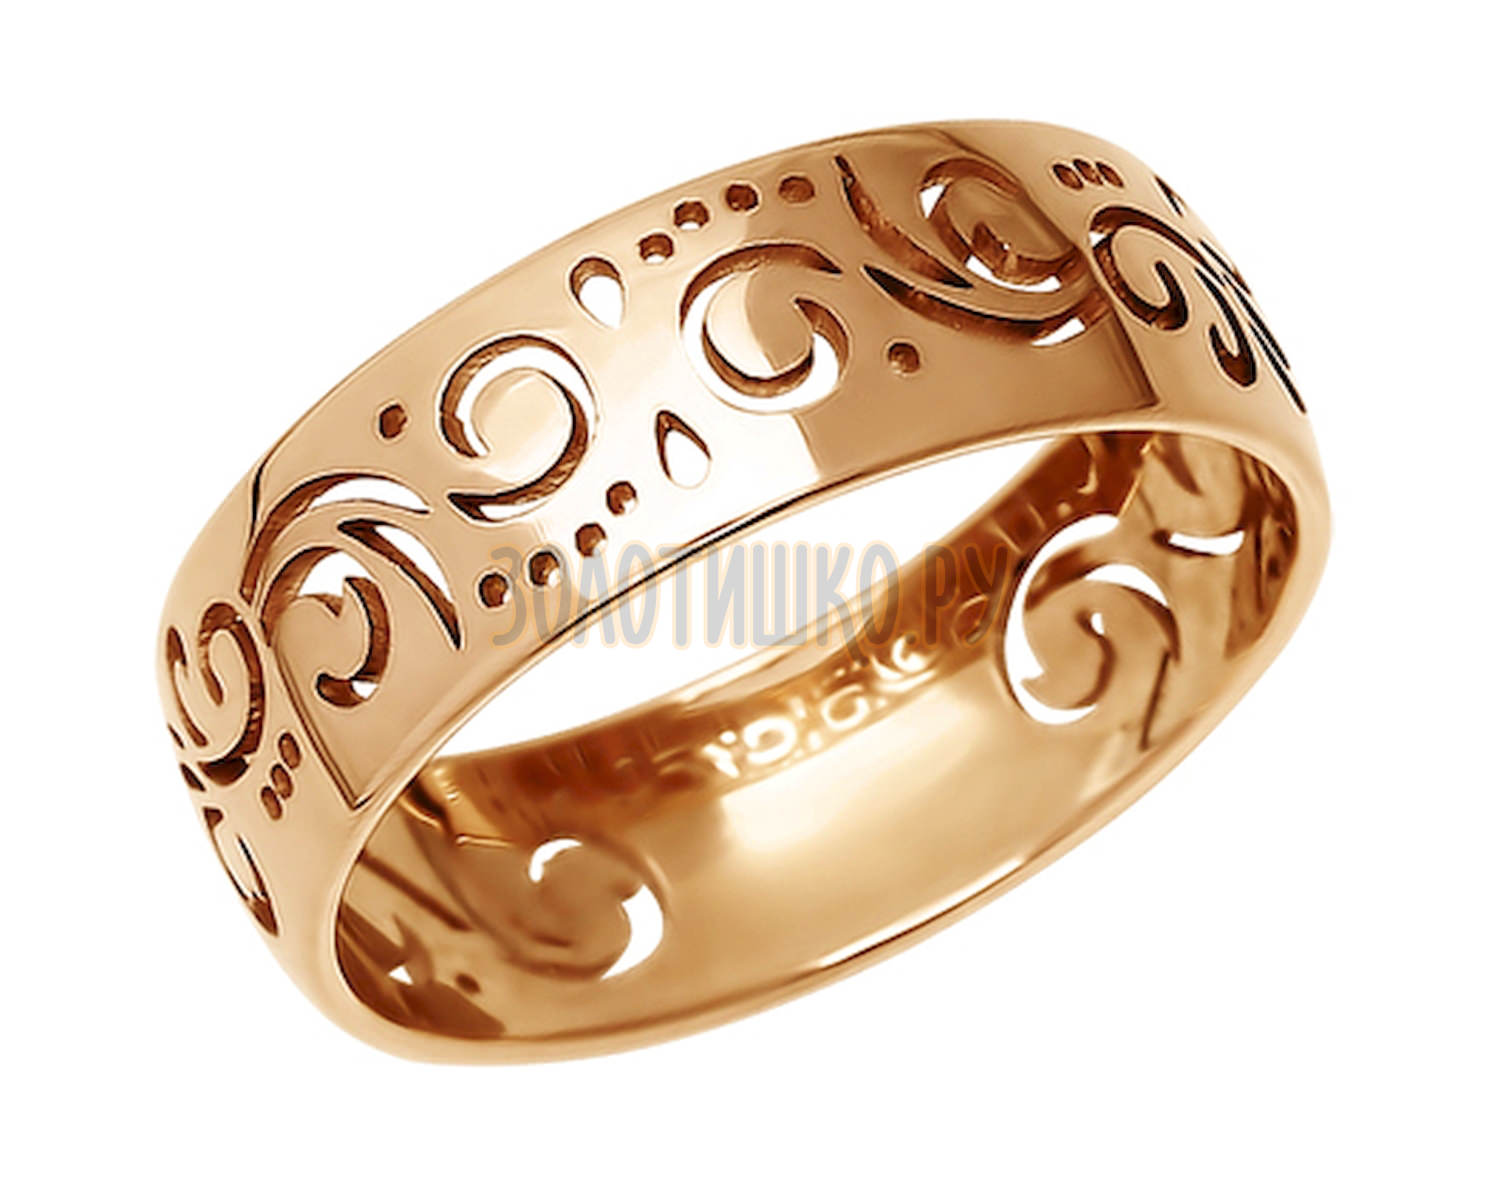 110099 - Ажурное обручальное кольцо - SOKOLOV - купить в интернет-магазине Золотишко.ру